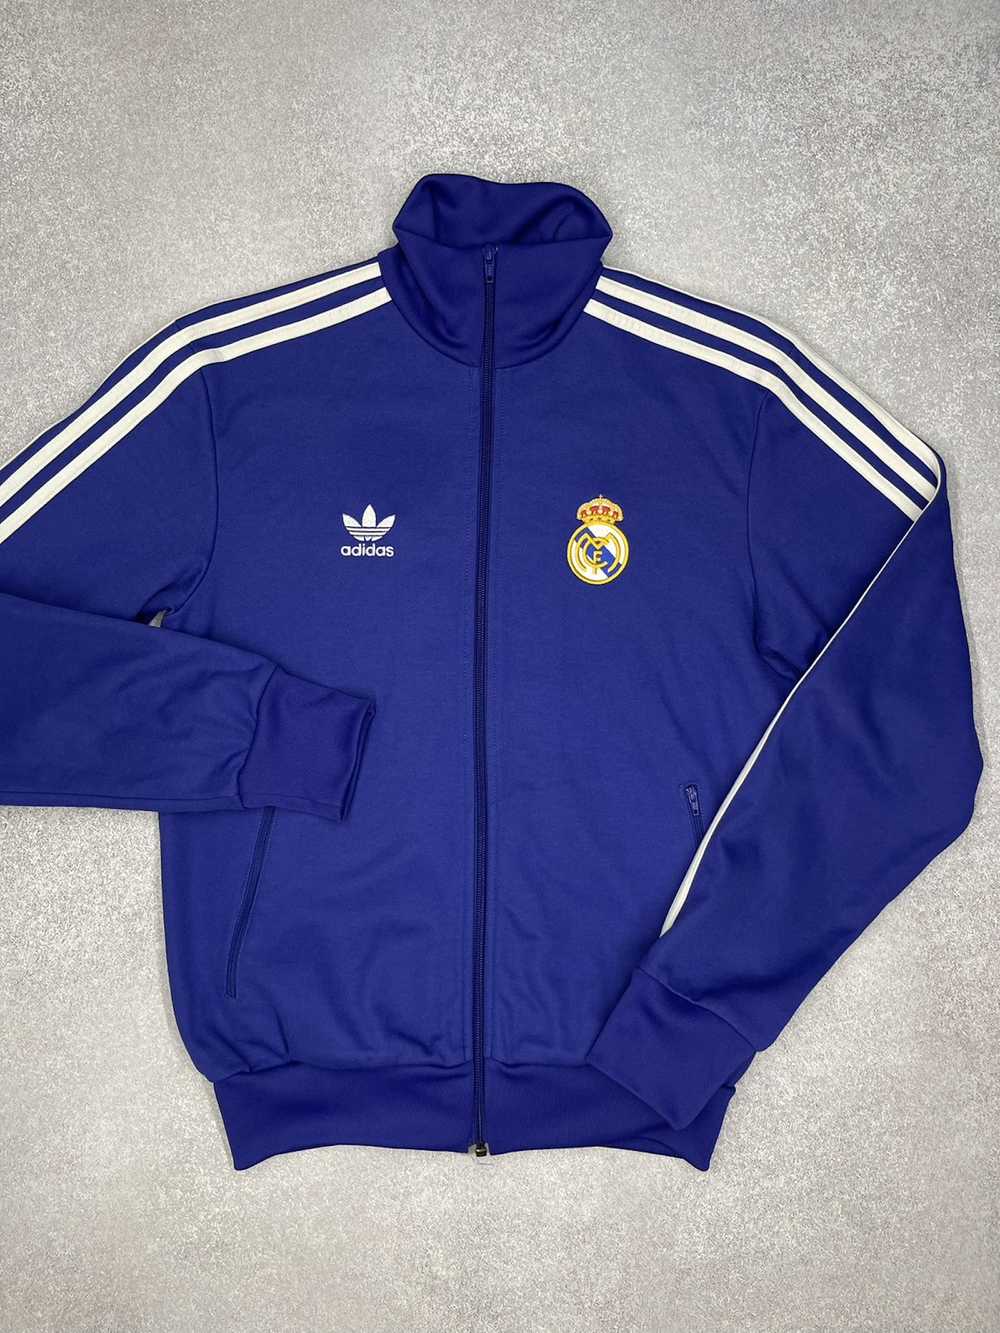 Adidas × Real Madrid × Vintage Vintage Adidas Rea… - image 2